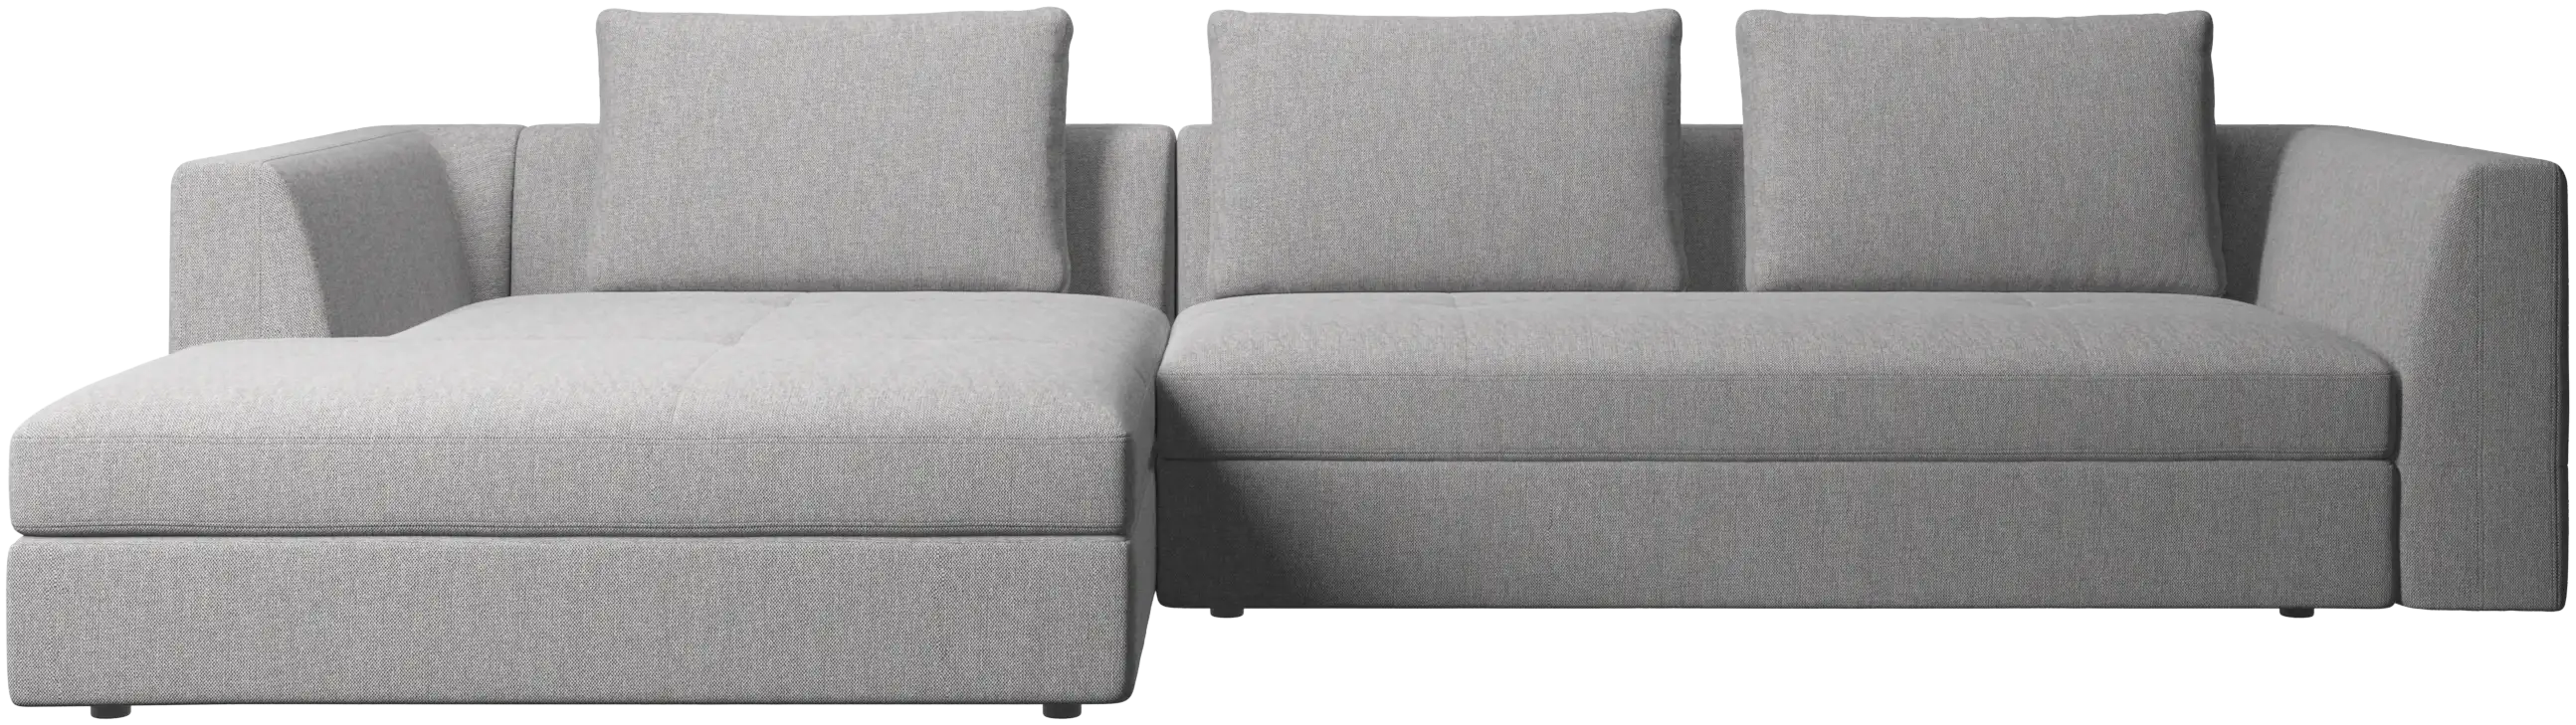 Bergamo sofa with resting unit